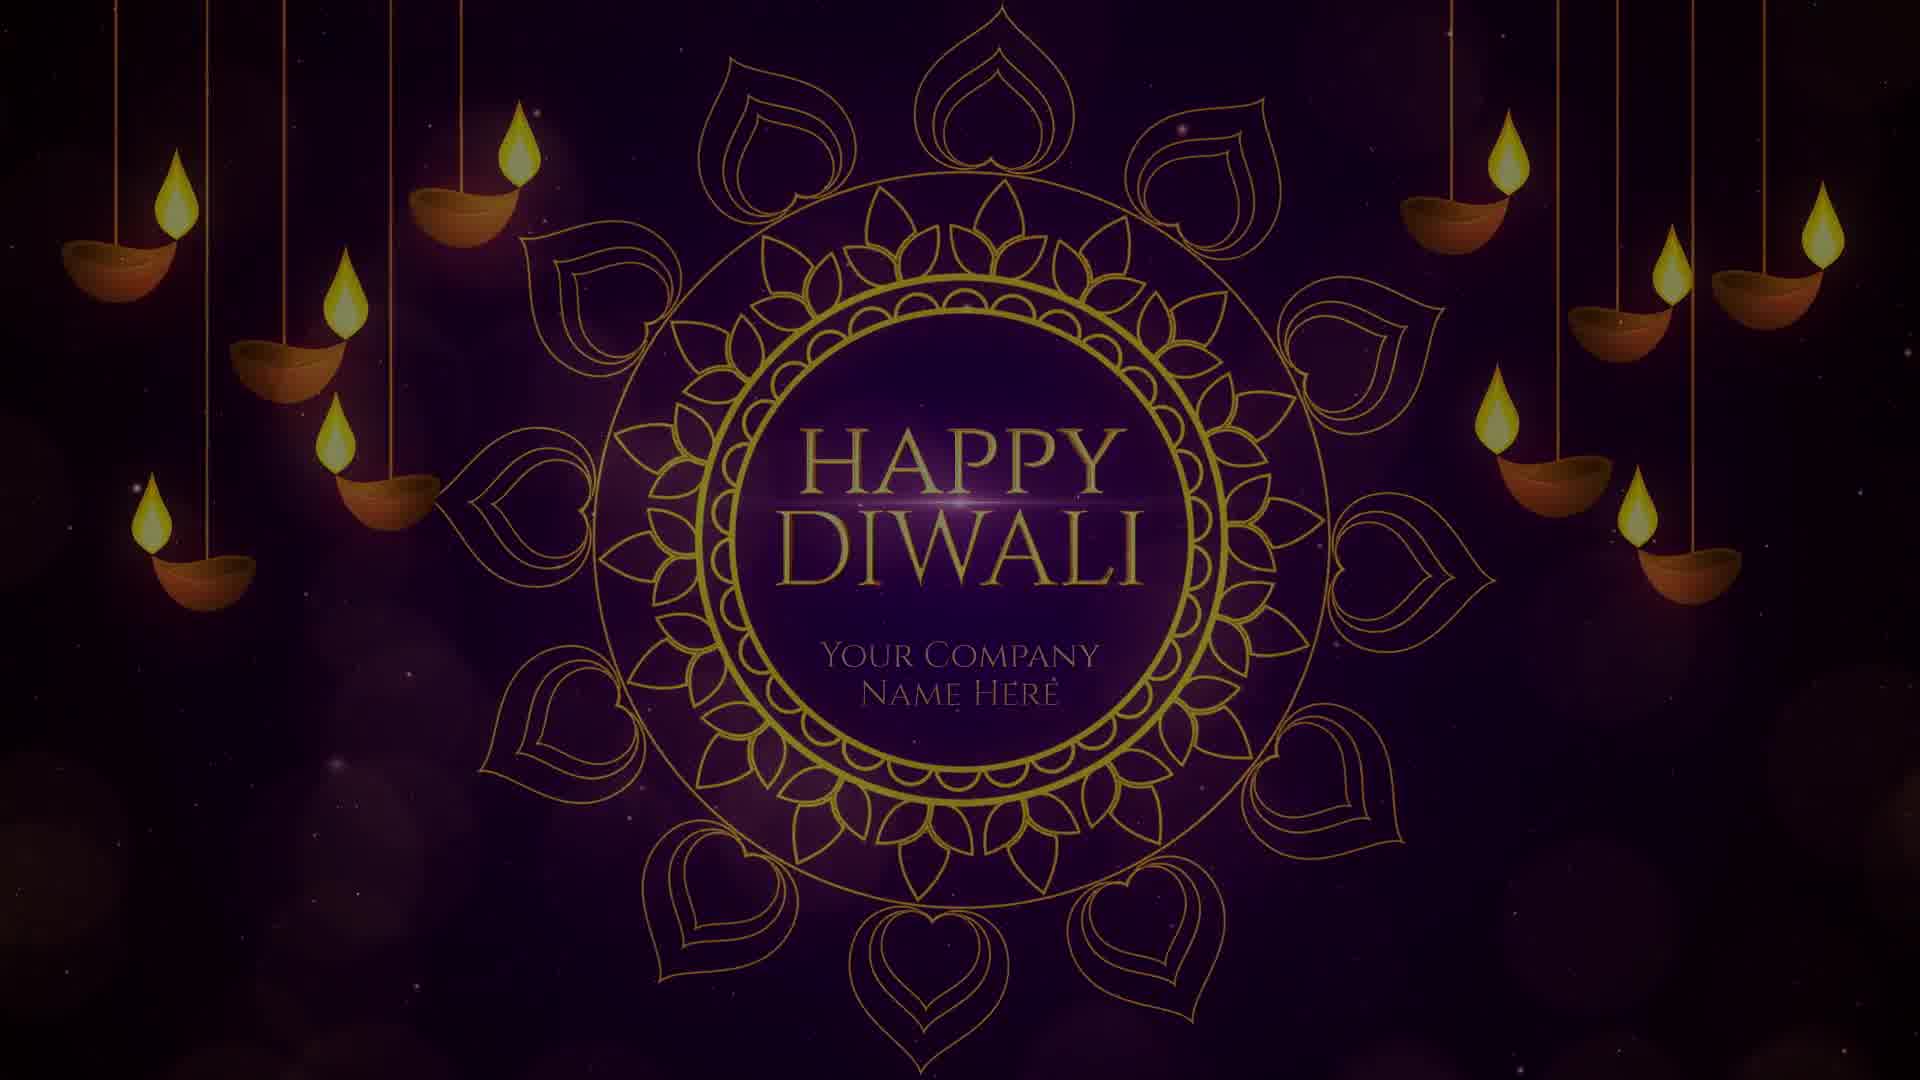 Diwali Wishes Premiere Pro Videohive 24824181 Premiere Pro Image 9